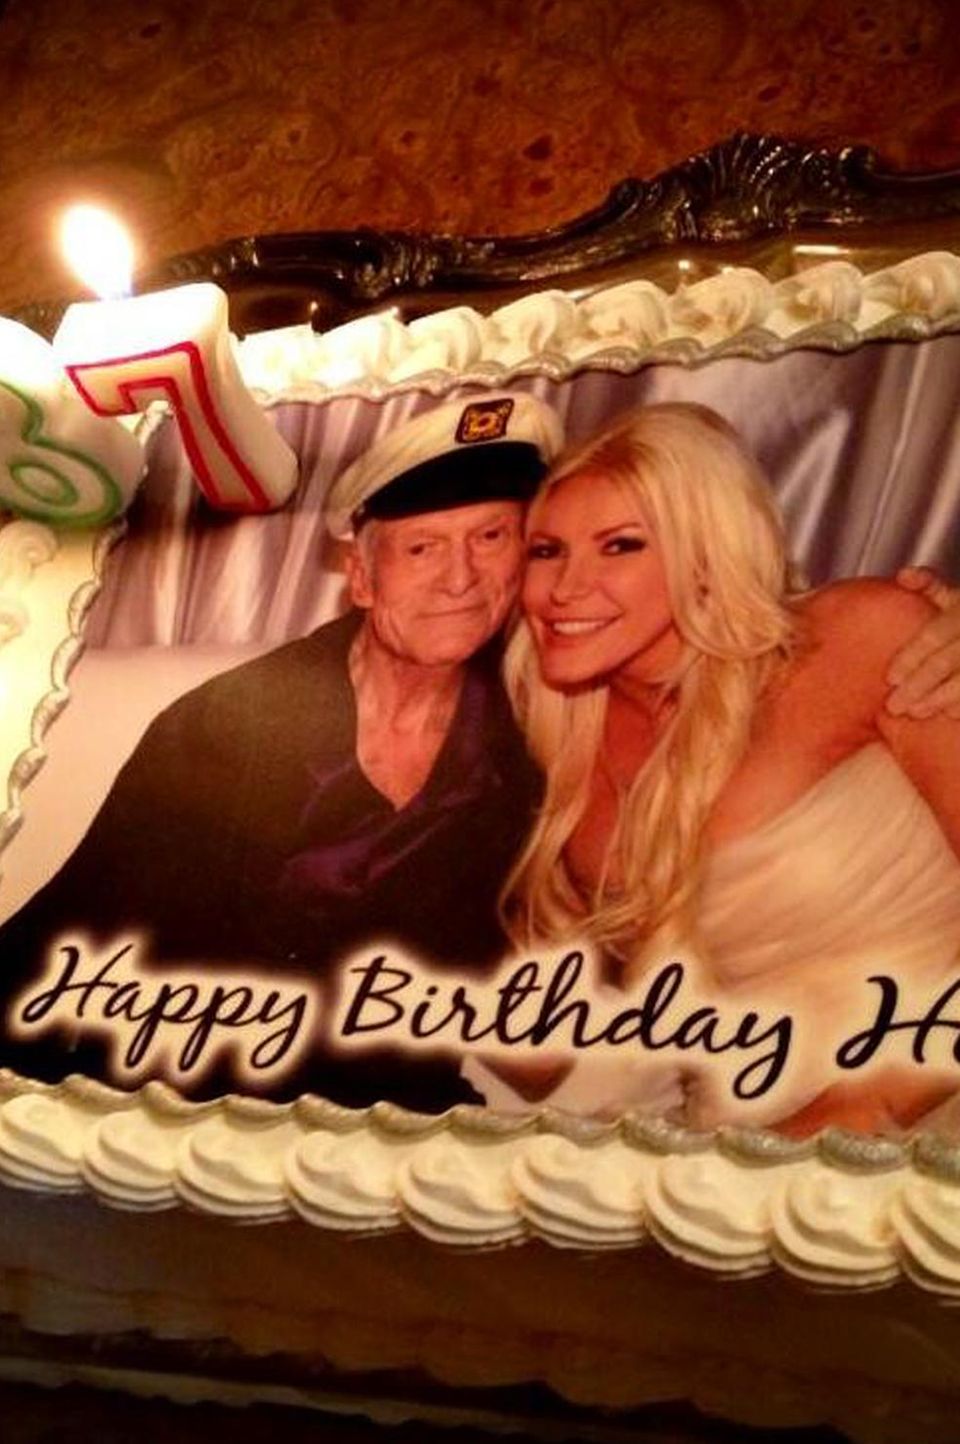 Zum 87. Geburtstag bekommt Hugh Hefner von seiner Angetrauten Crystal eine Torte mit einem Hochzeitsfoto der beiden.